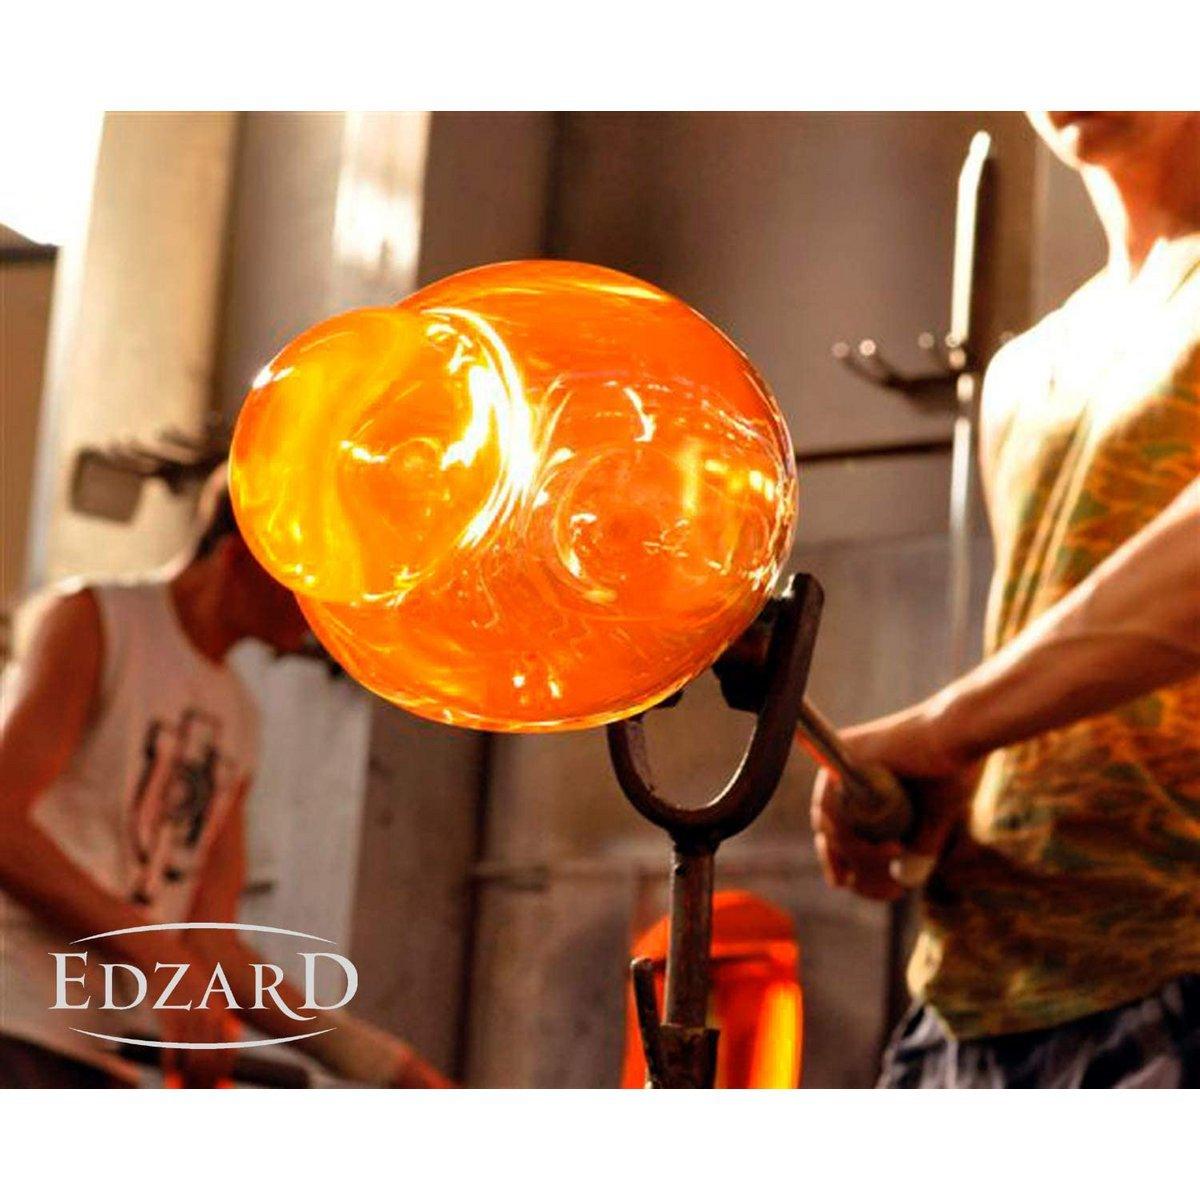 EDZARD Windlicht Molly, mundgeblasenes Kristallglas mit Platinrand, Höhe 18 cm, Durchmesser 18 cm - HomeDesign Knaus